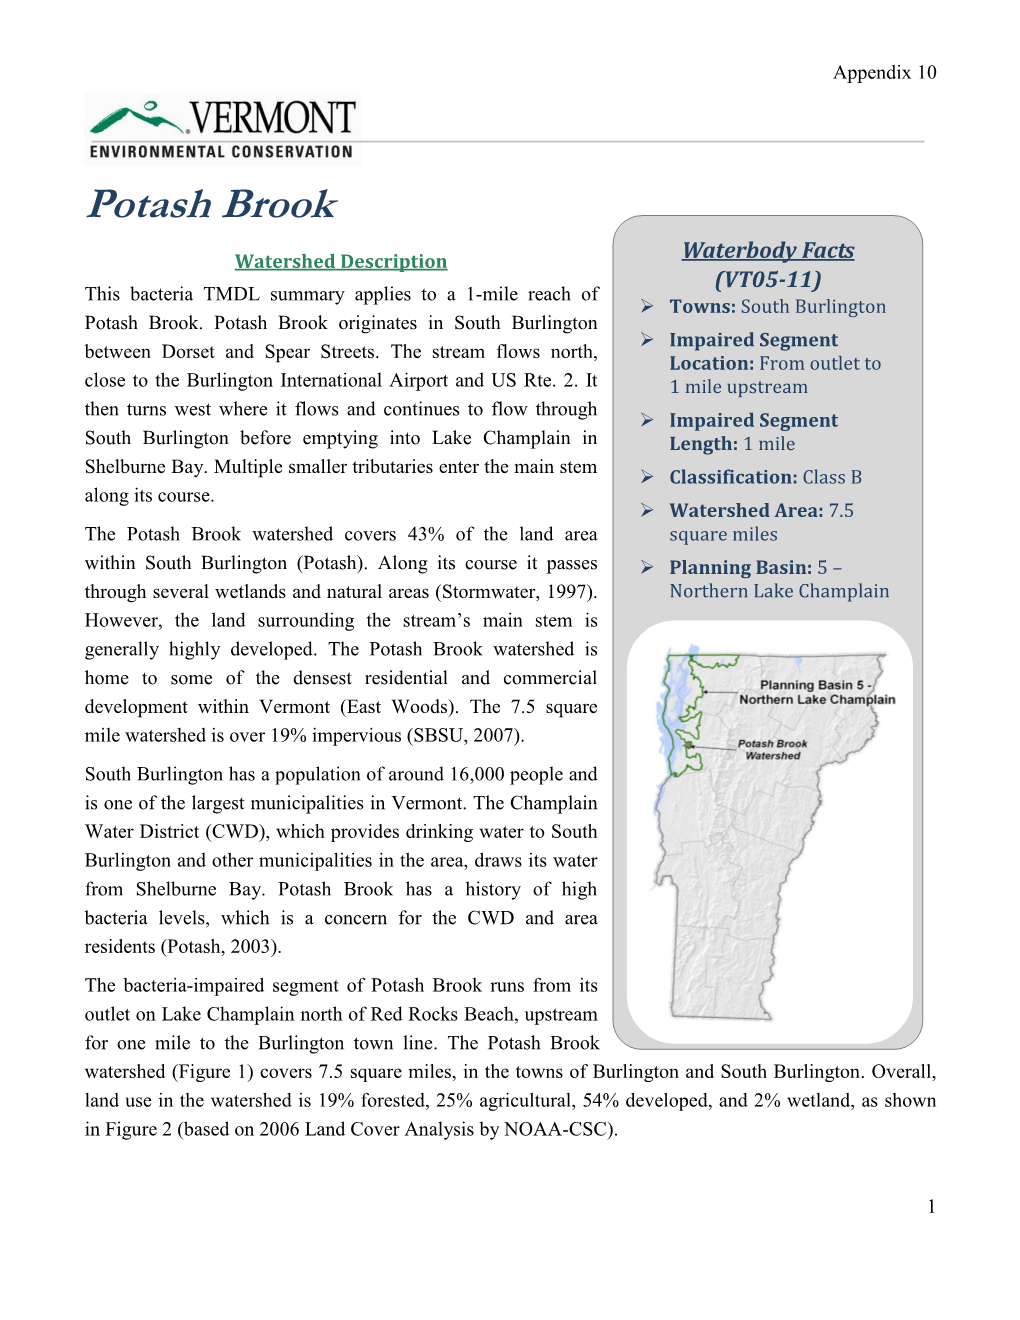 Potash Brook